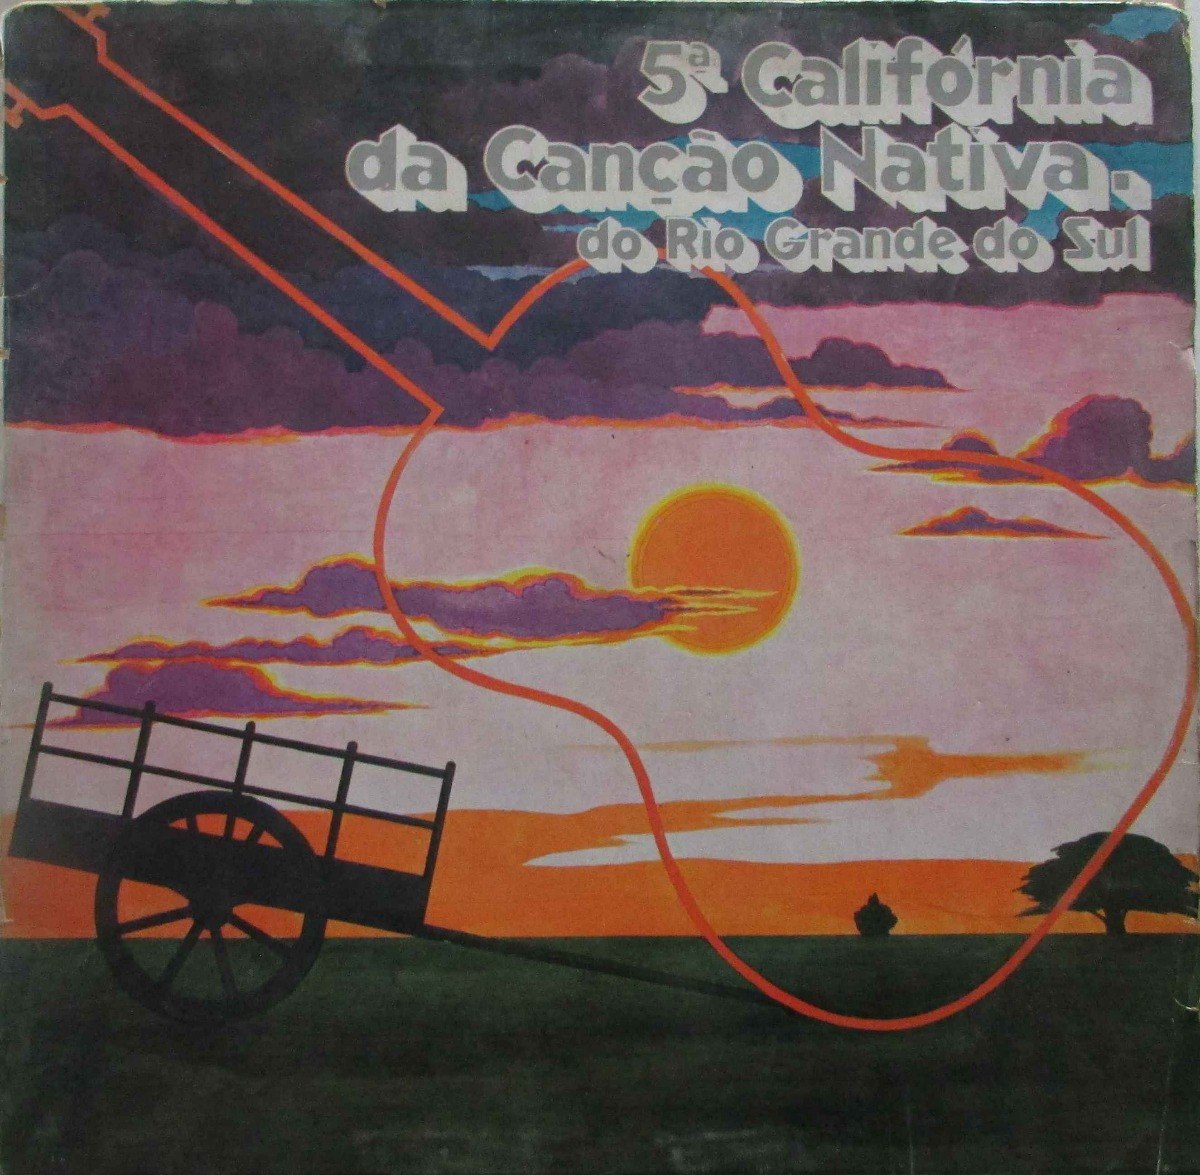 LP 5ª Califórnia da Canção Nativa